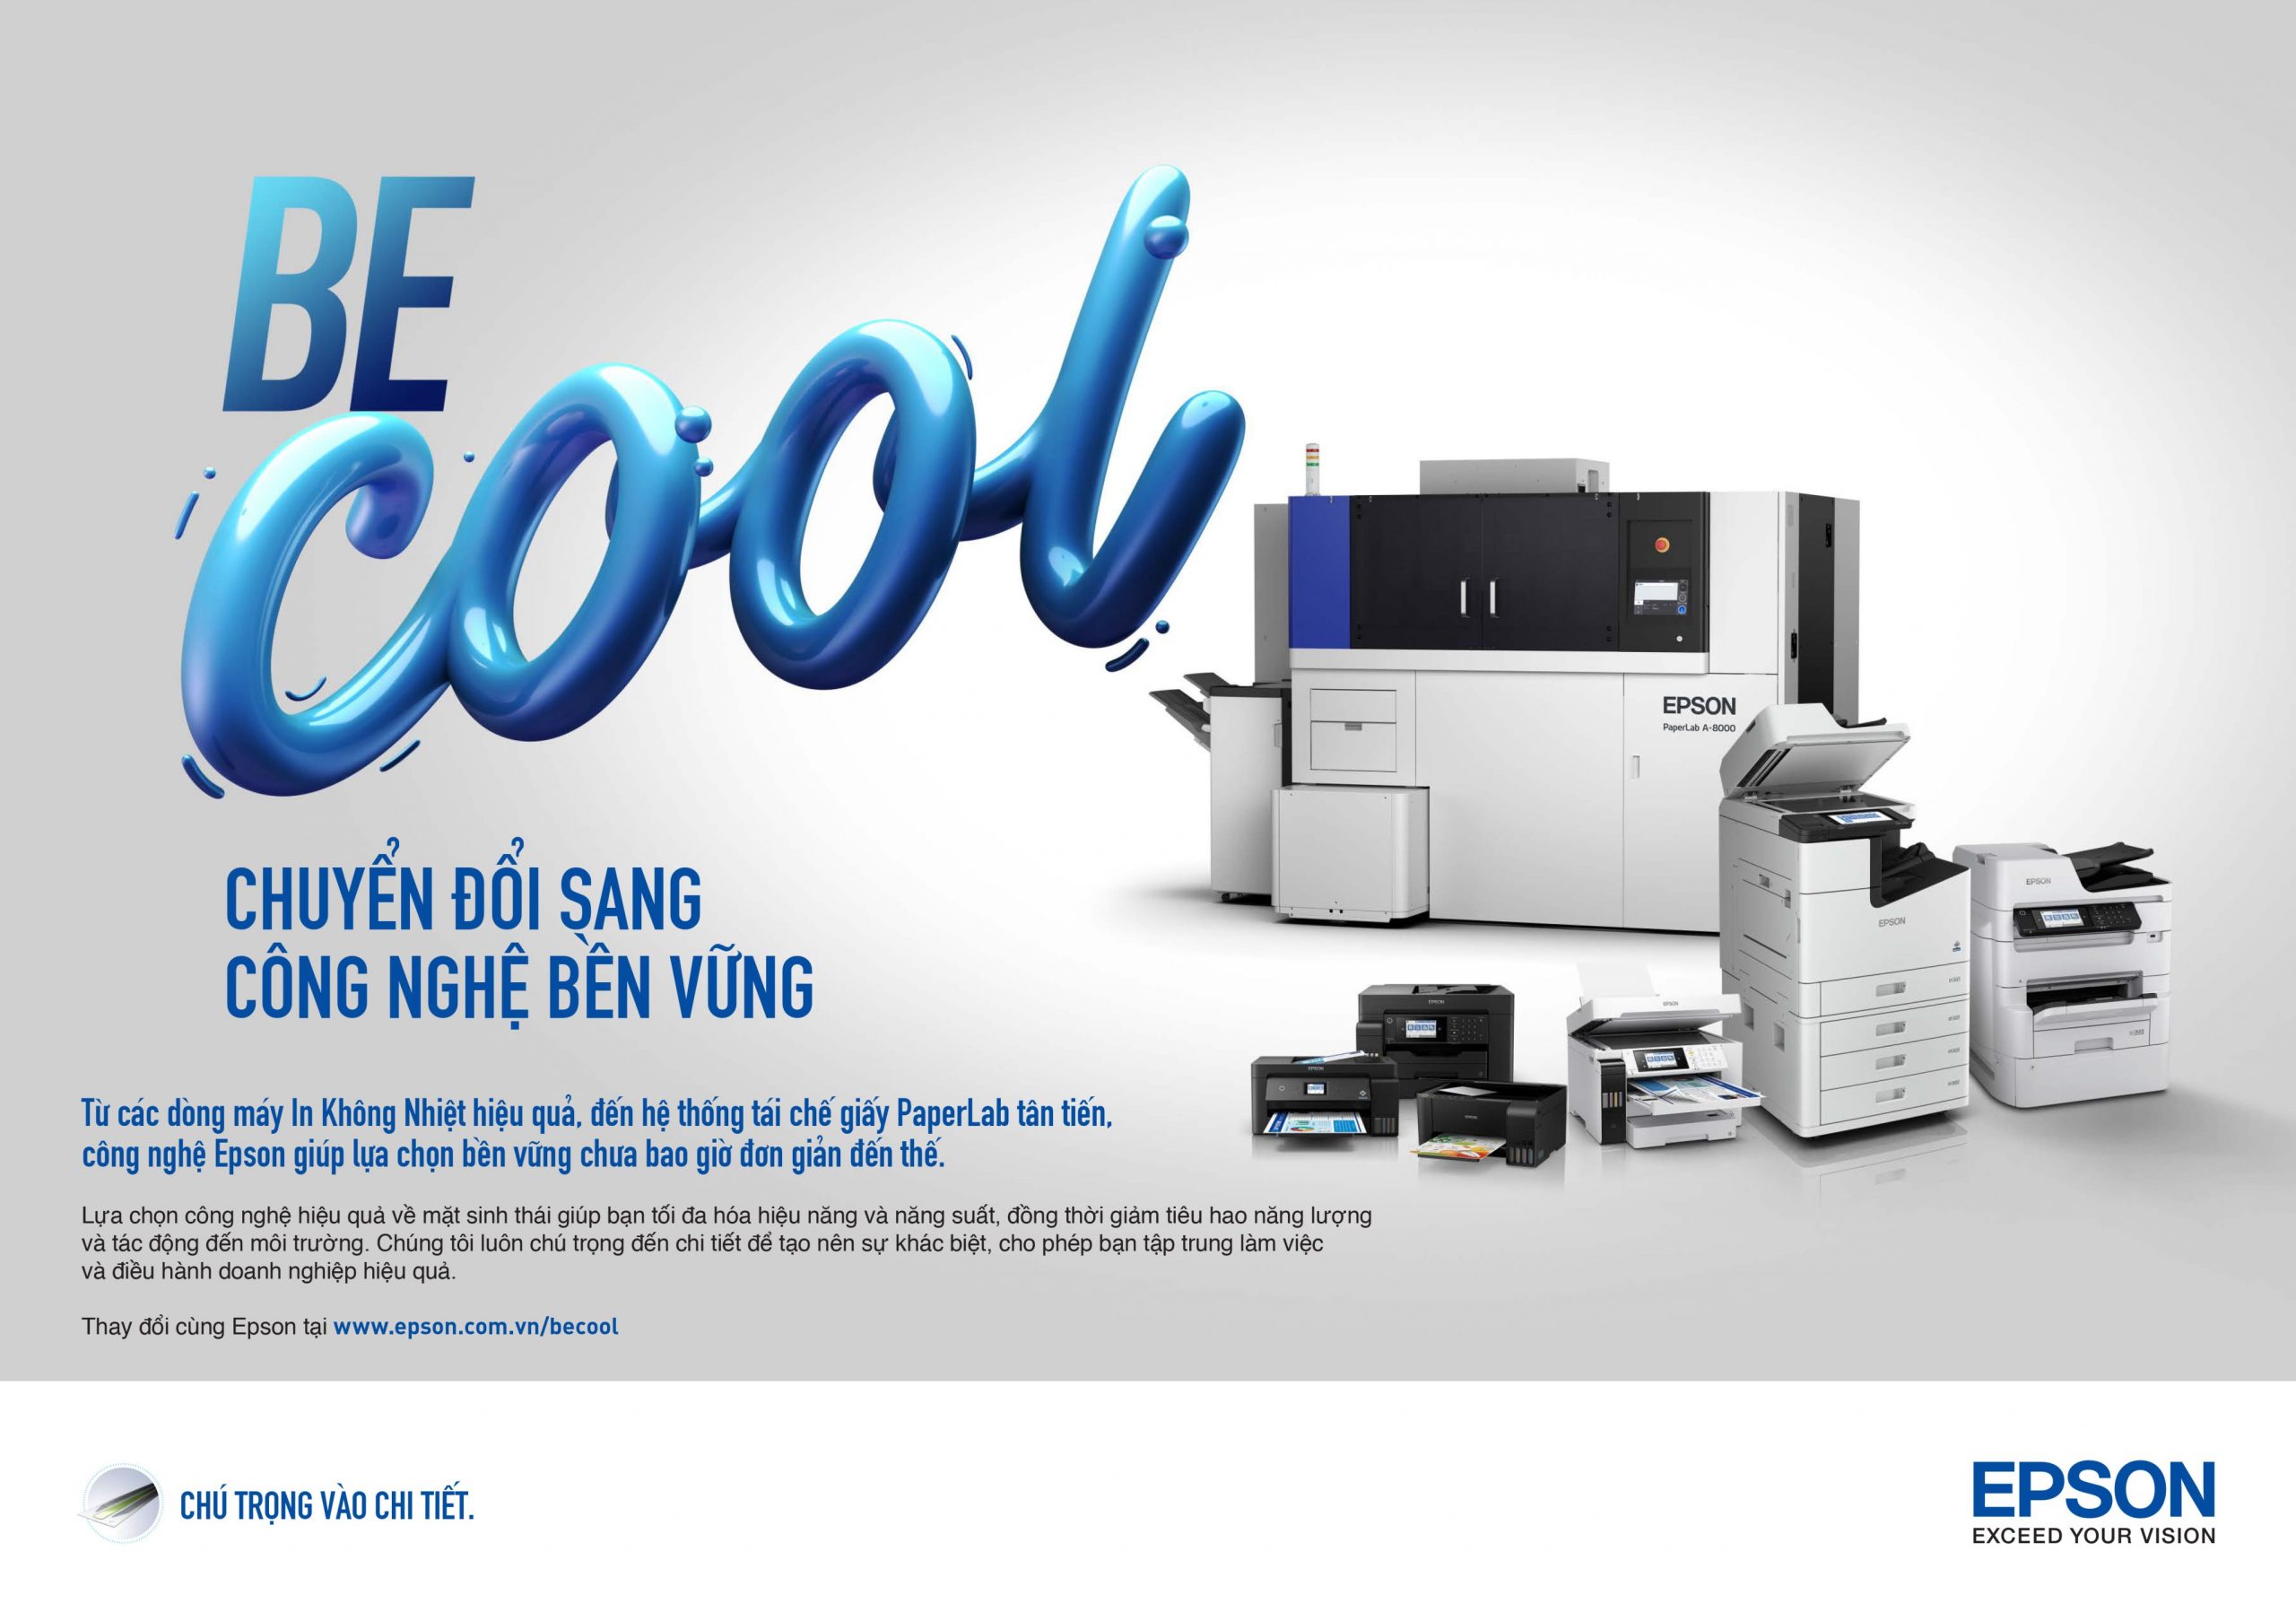 Hướng đến in ấn bền vững, Epson chính thức ra mắt chiến dịch truyền thông “Be Cool”